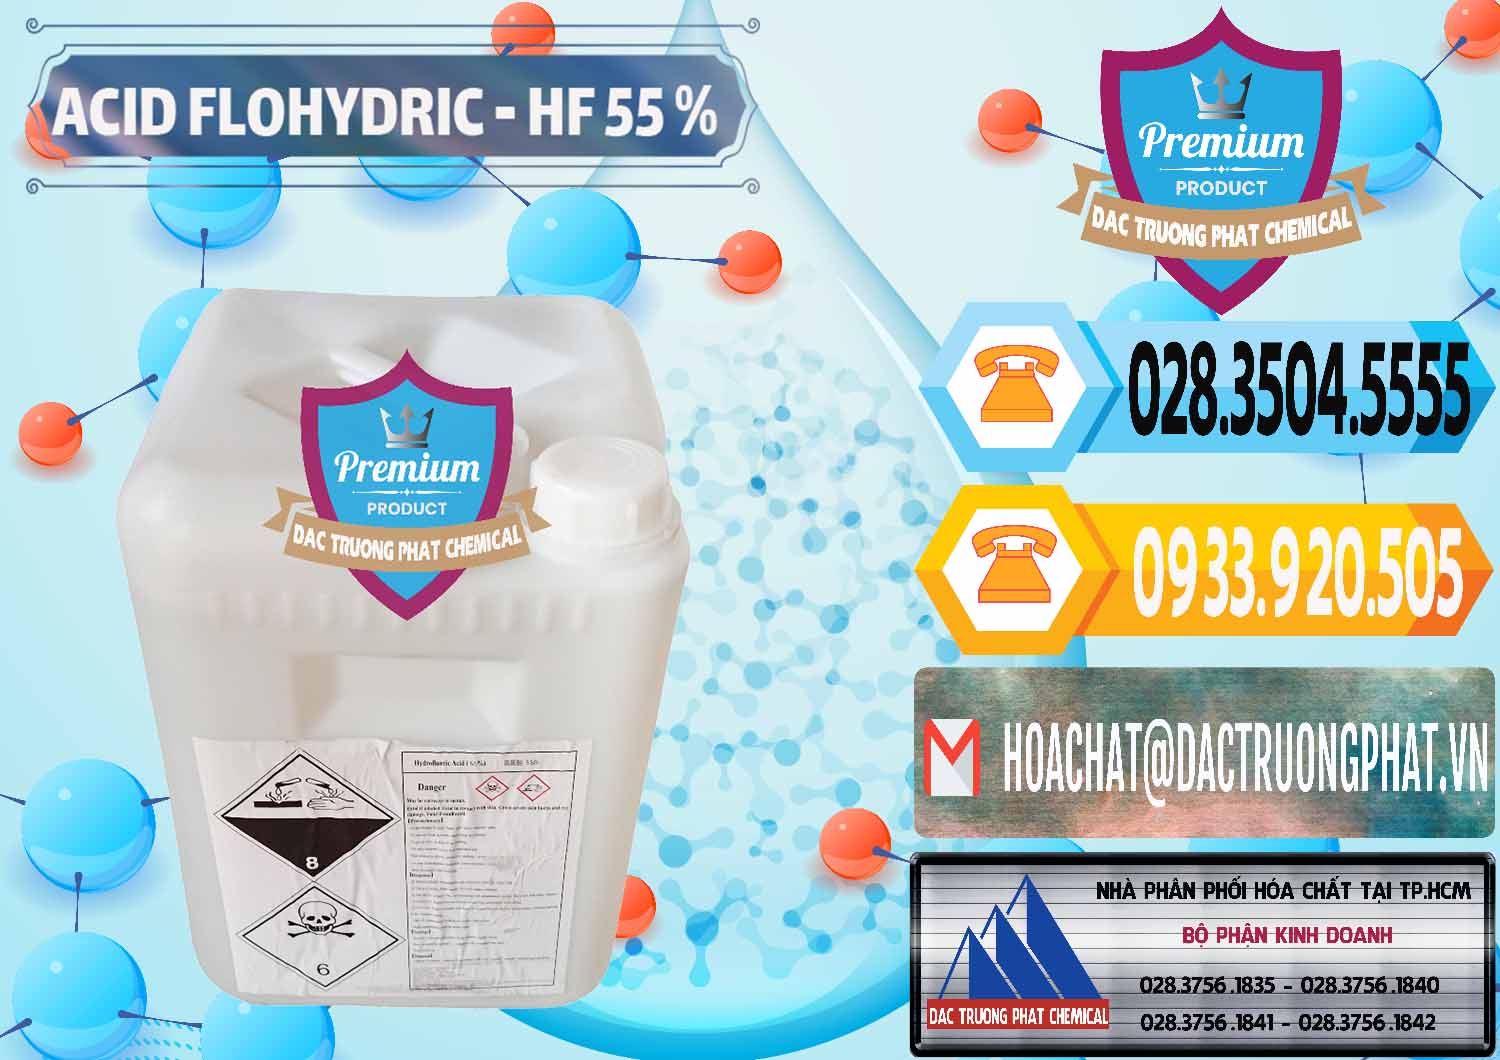 Công ty bán - phân phối Axit HF - Acid HF 55% Can Trắng Trung Quốc China - 0079 - Chuyên kinh doanh và cung cấp hóa chất tại TP.HCM - hoachattayrua.net